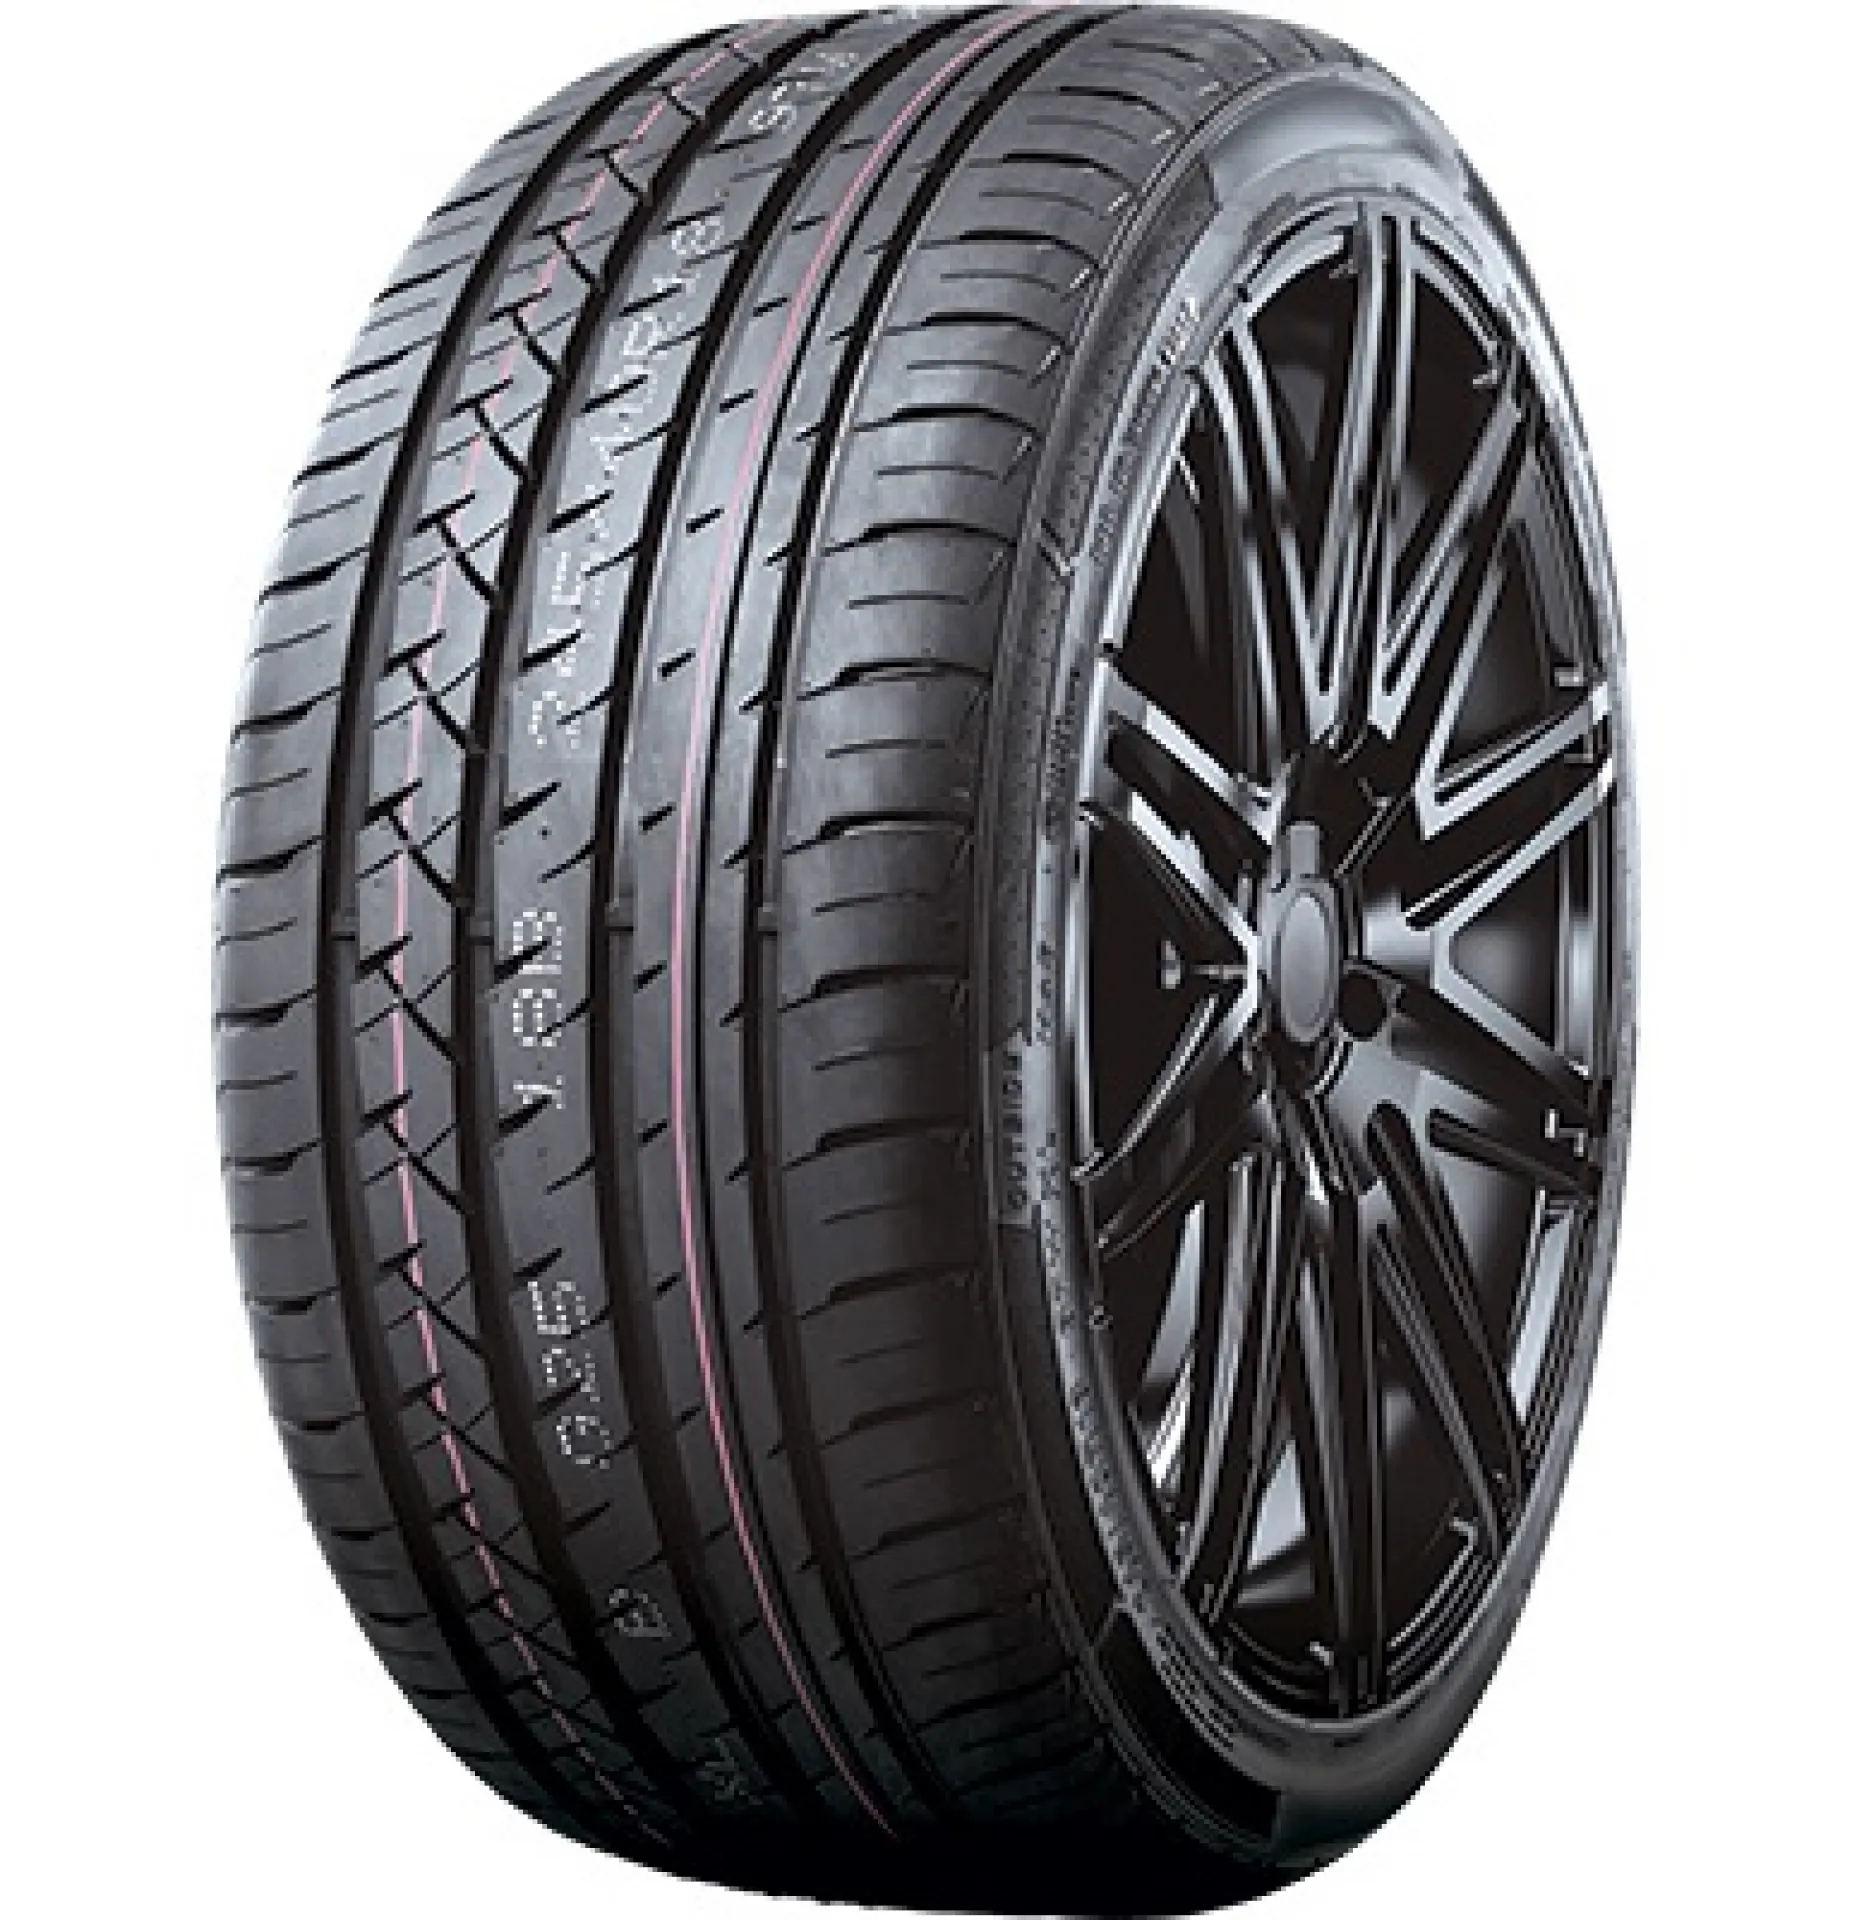 T-Tyre Four 235/45R18 98W XL